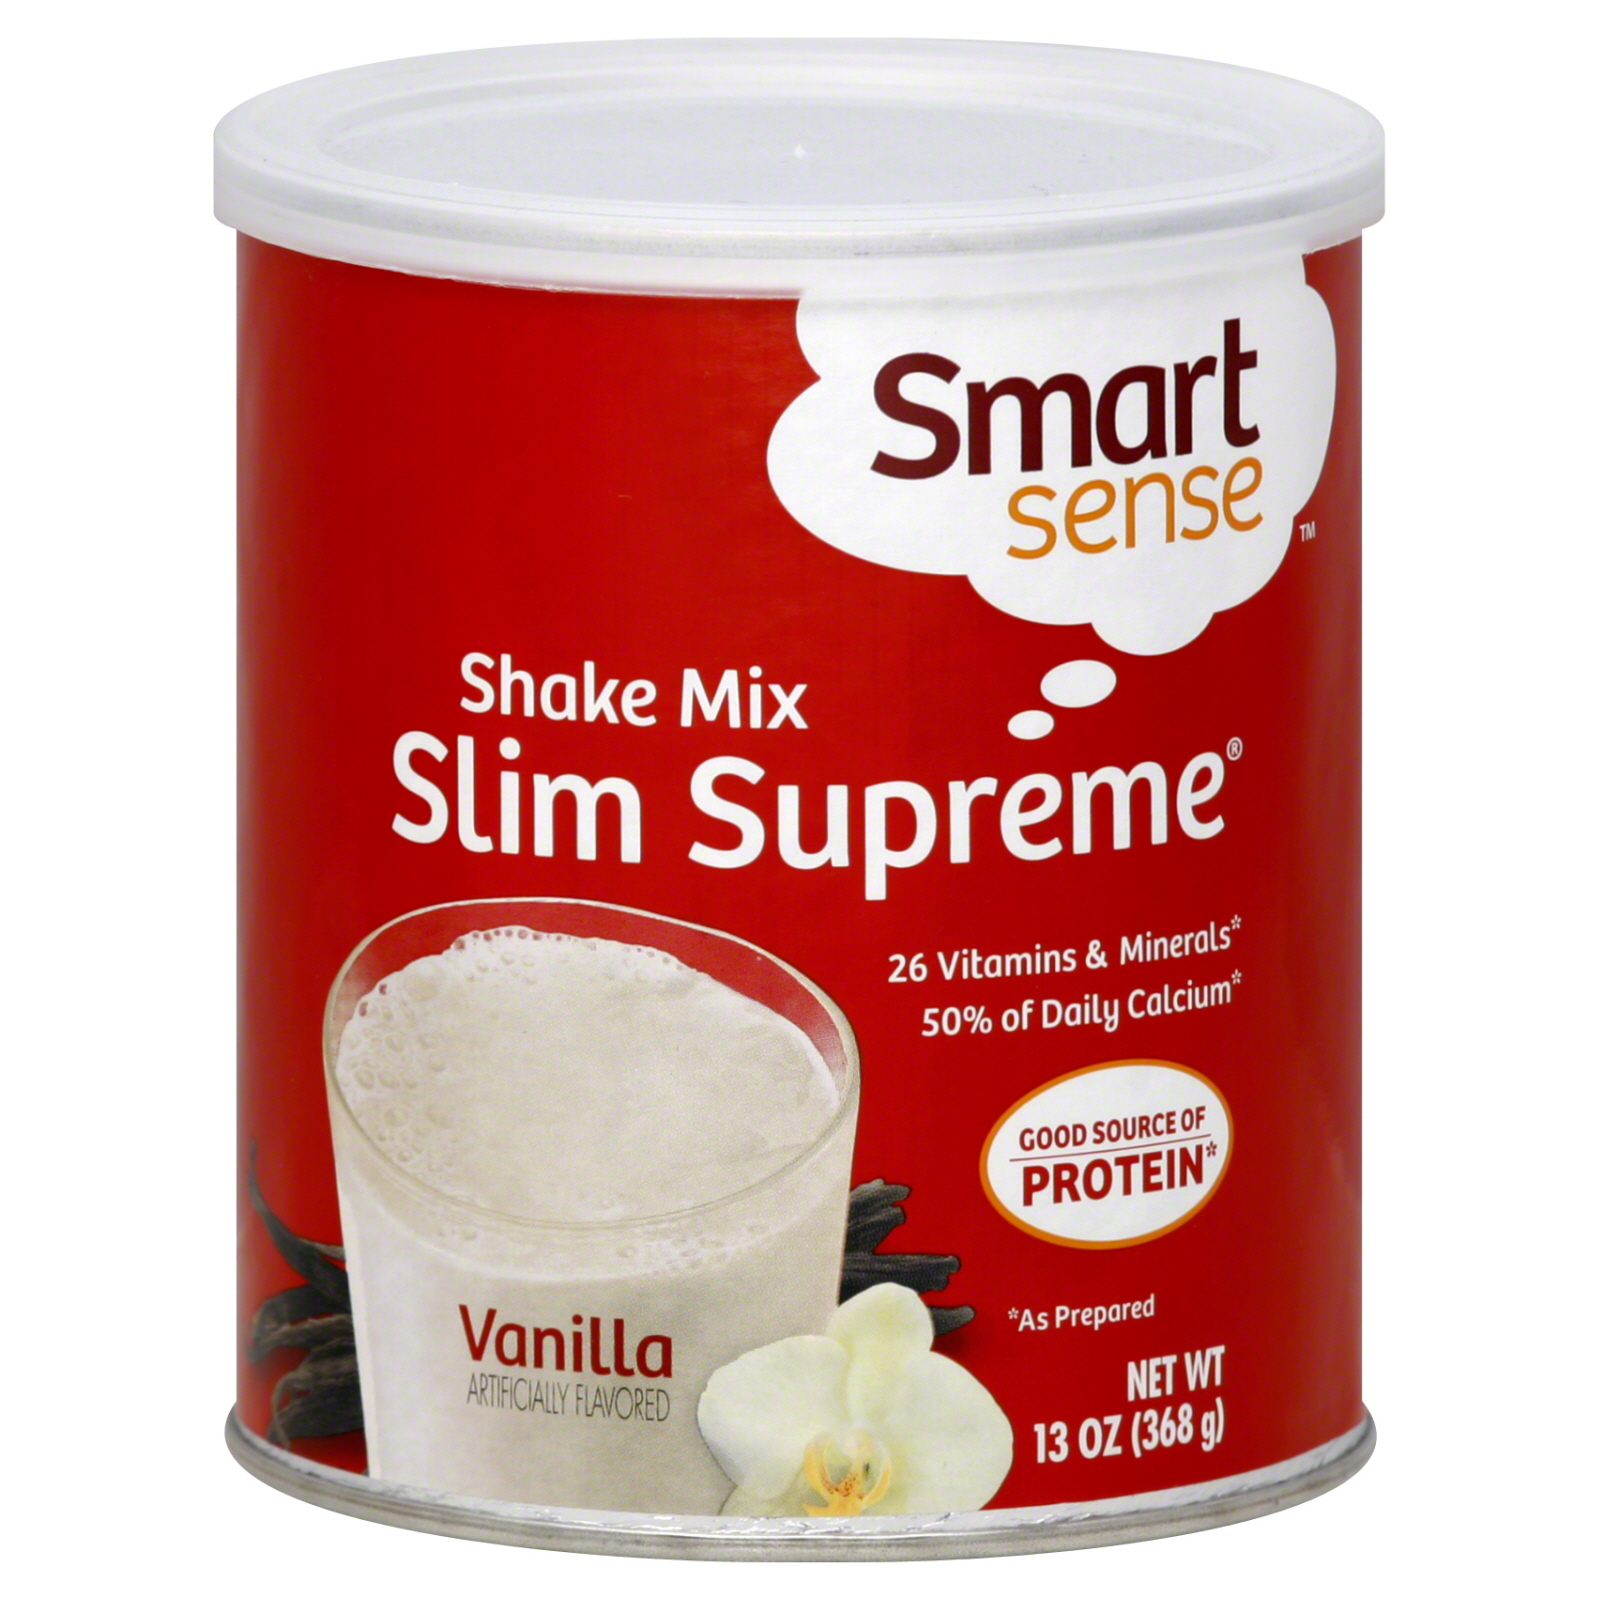 Smart Sense Slim Supreme Shake Mix, Vanilla 13 oz (368 g)